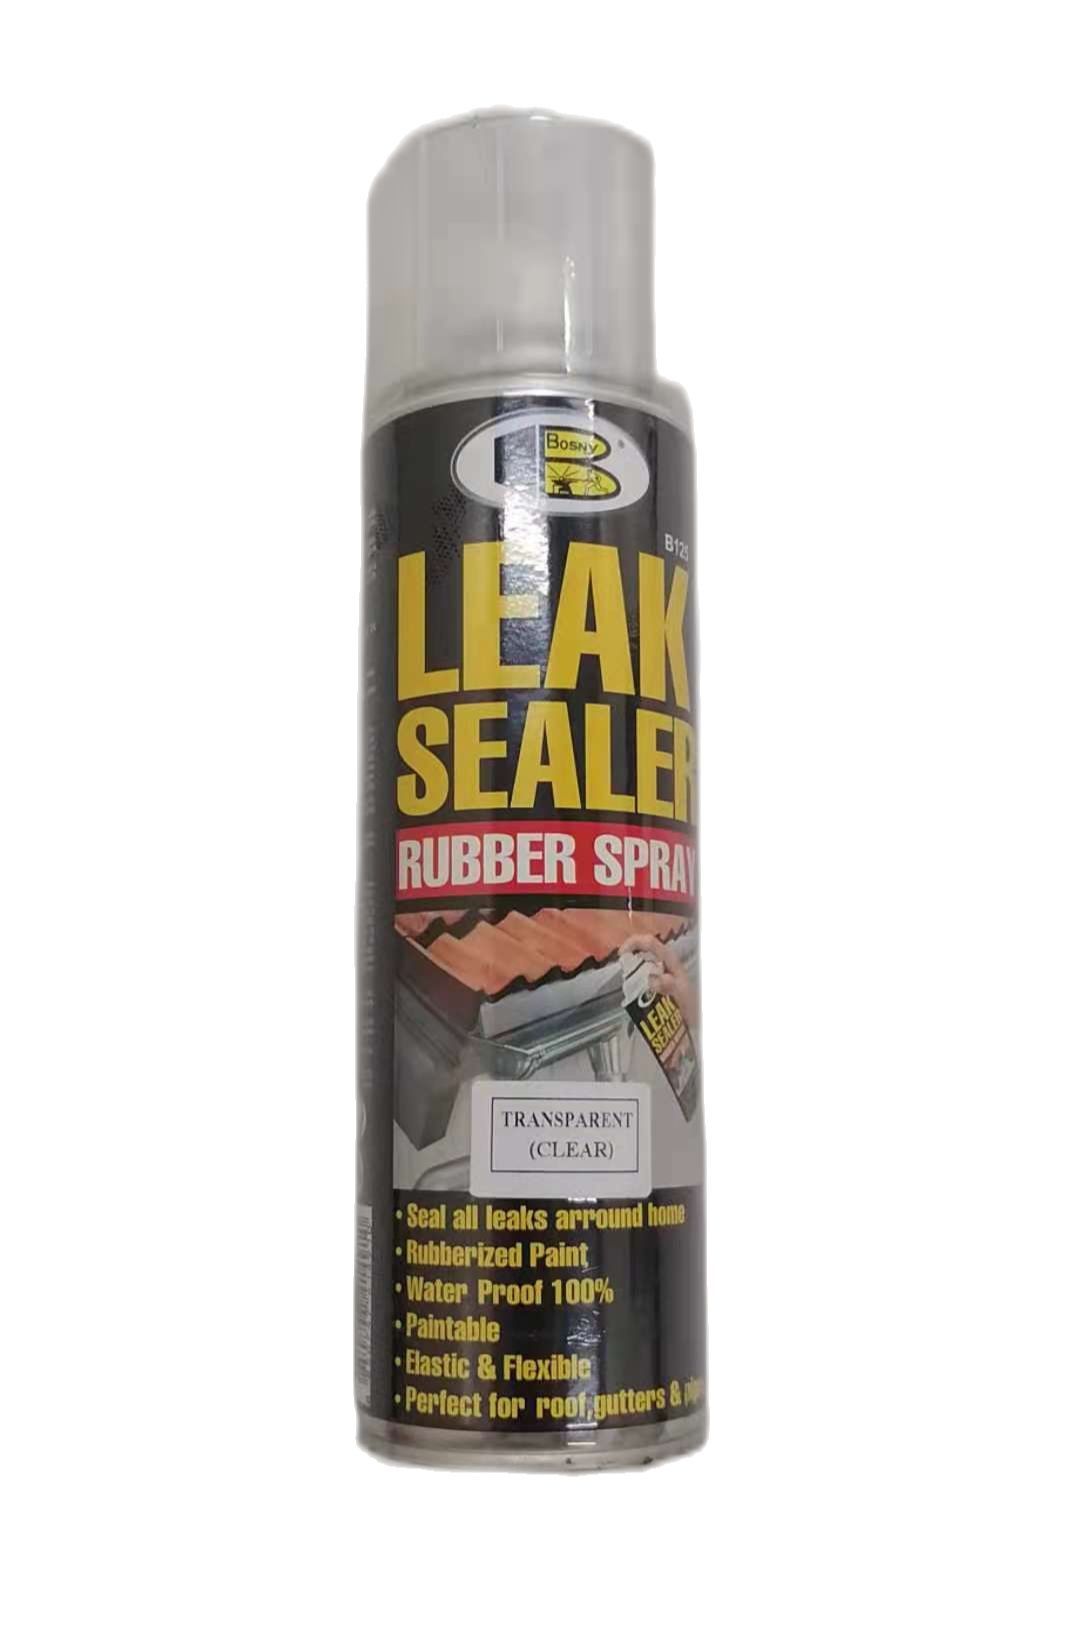 BOSNY Leak Sealer Spray - 600CC